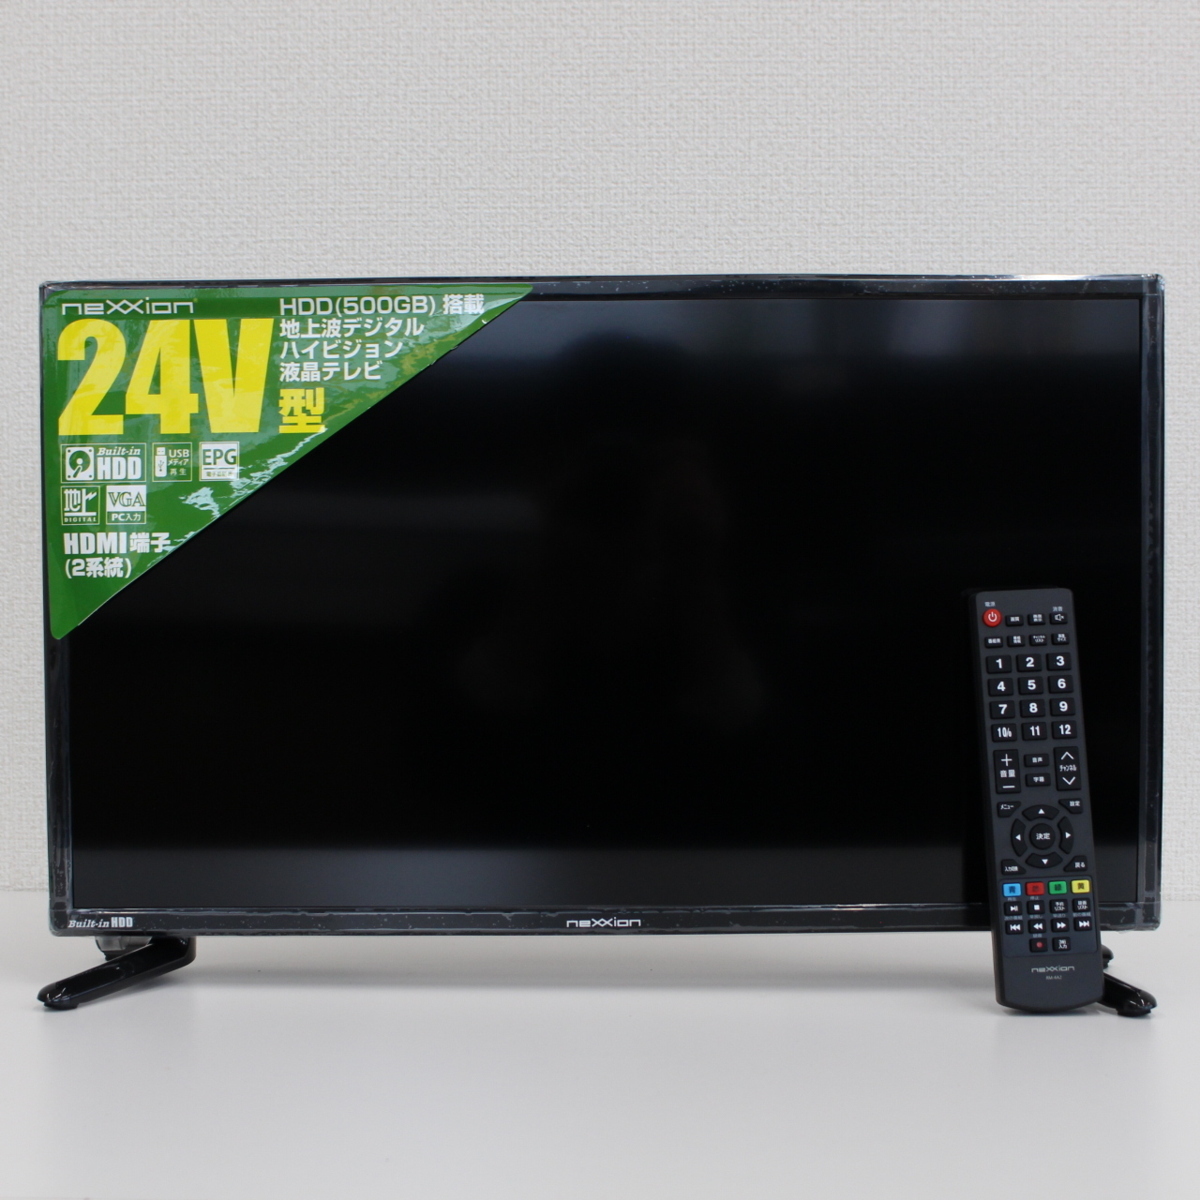 ネクシオン デジタルハイビジョン液晶テレビ FT-A2408HB 20年製 24V型